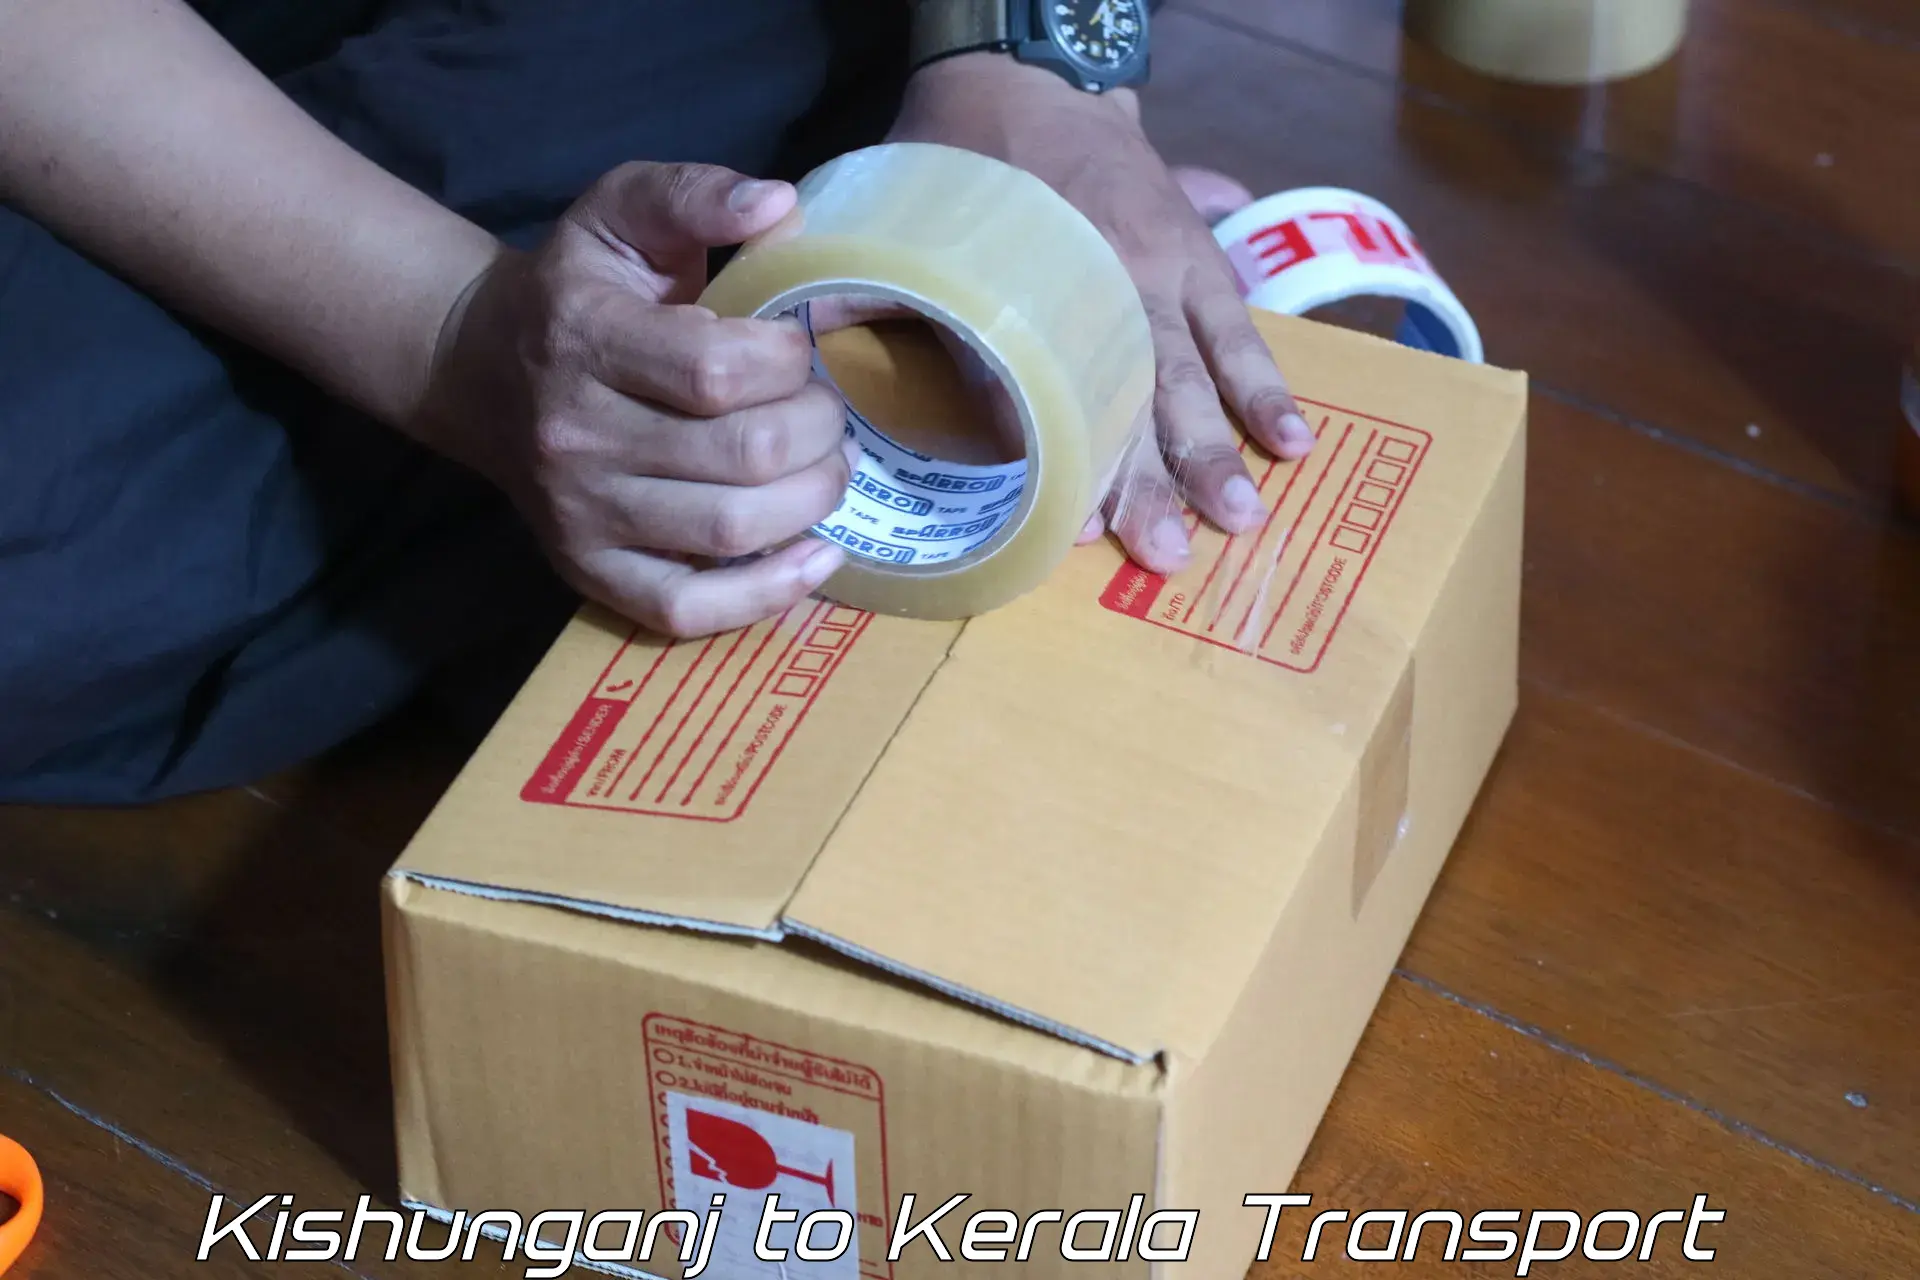 Shipping partner Kishunganj to Nedumkandam